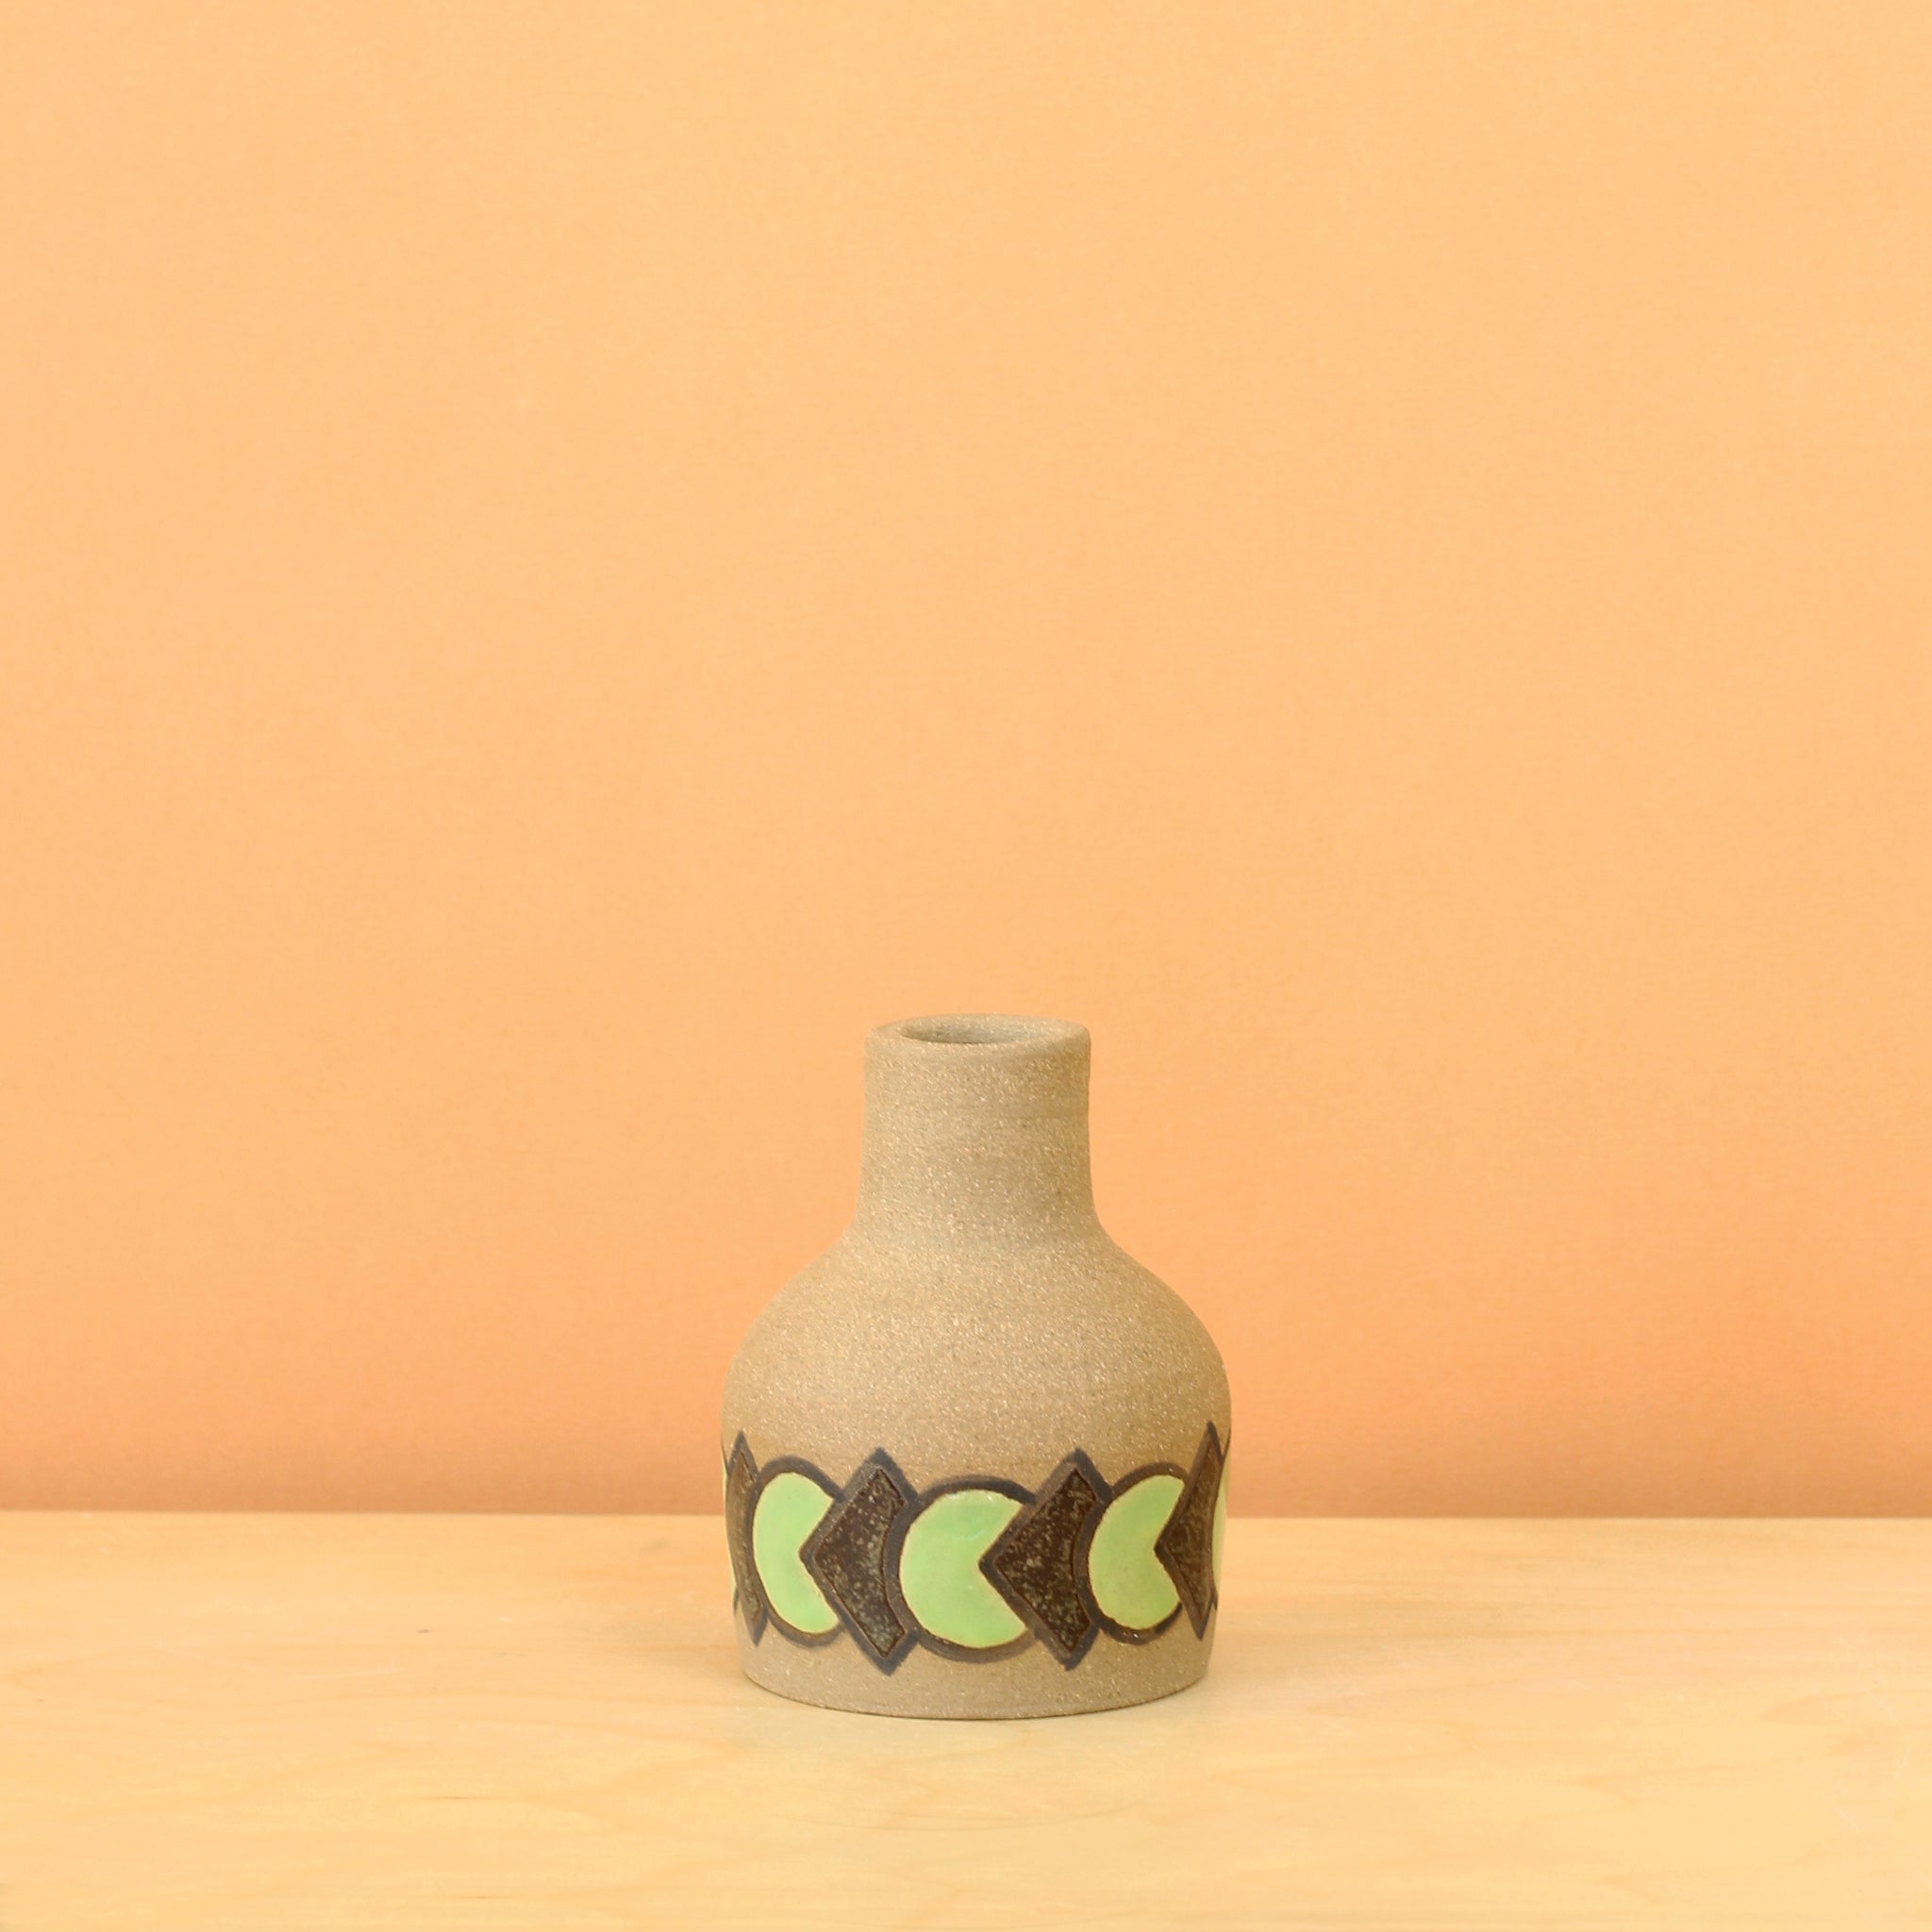 Glazed Stoneware Bud Vase with Overlapping Circle/Diamond Pattern